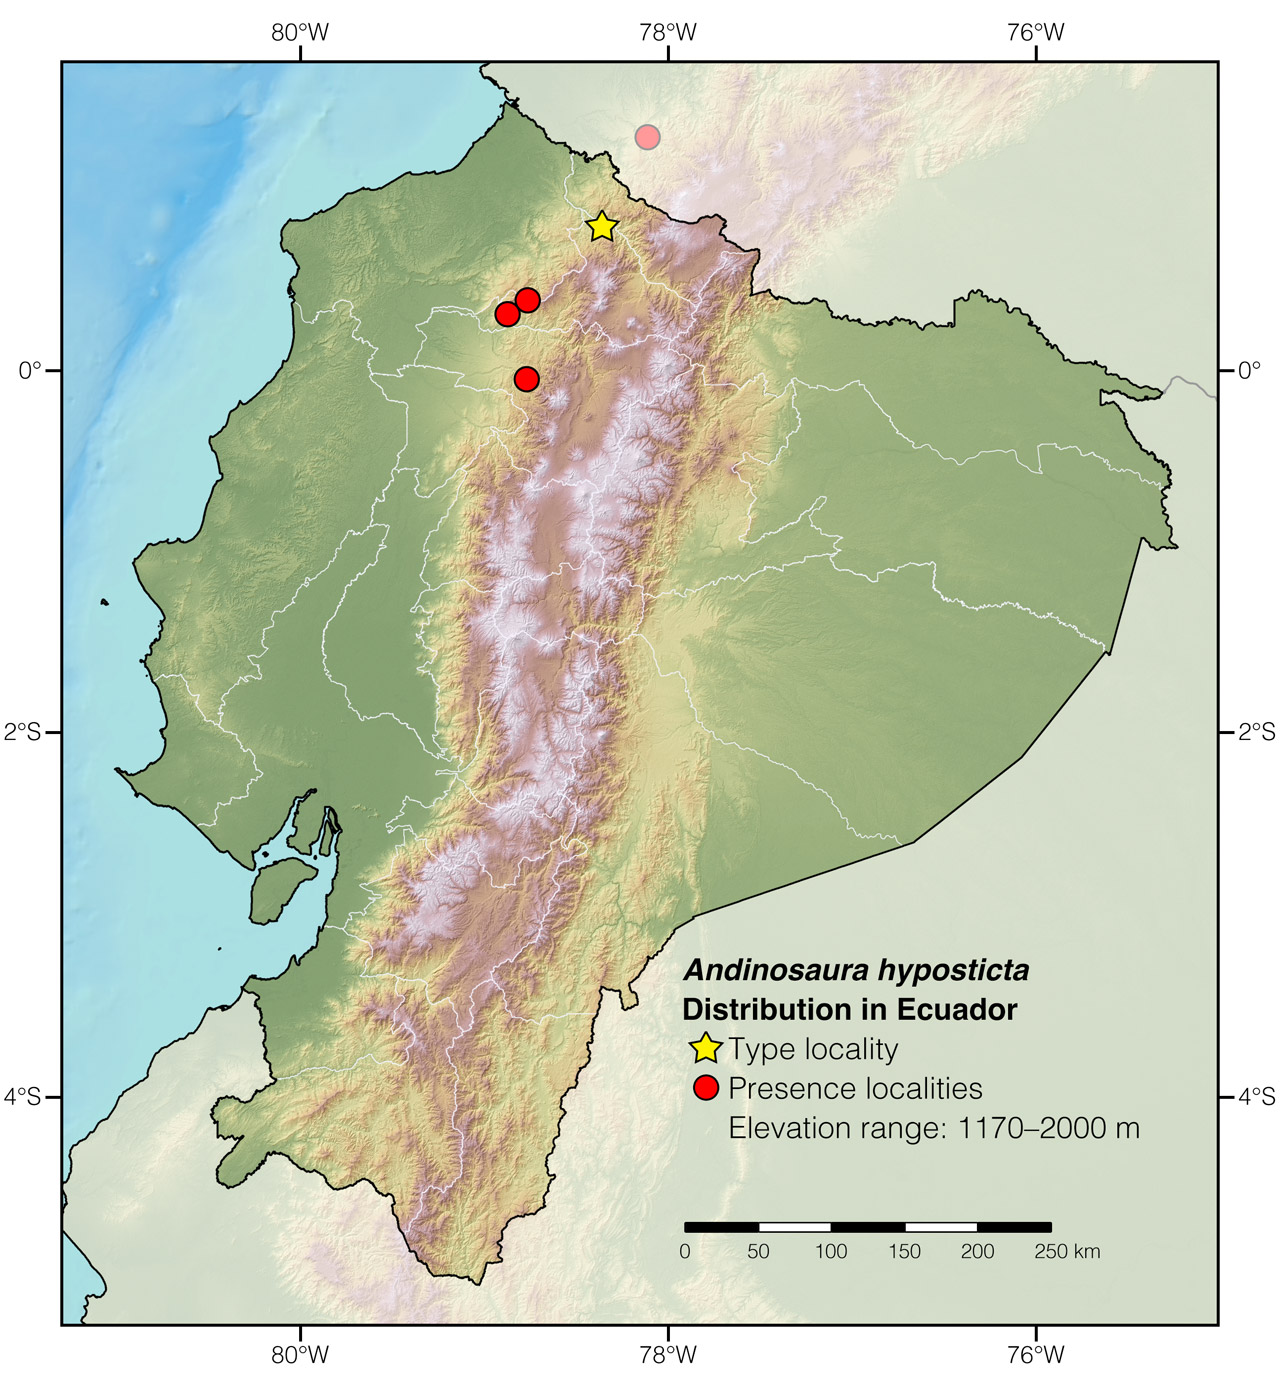 Distribution of Andinosaura hyposticta in Ecuador